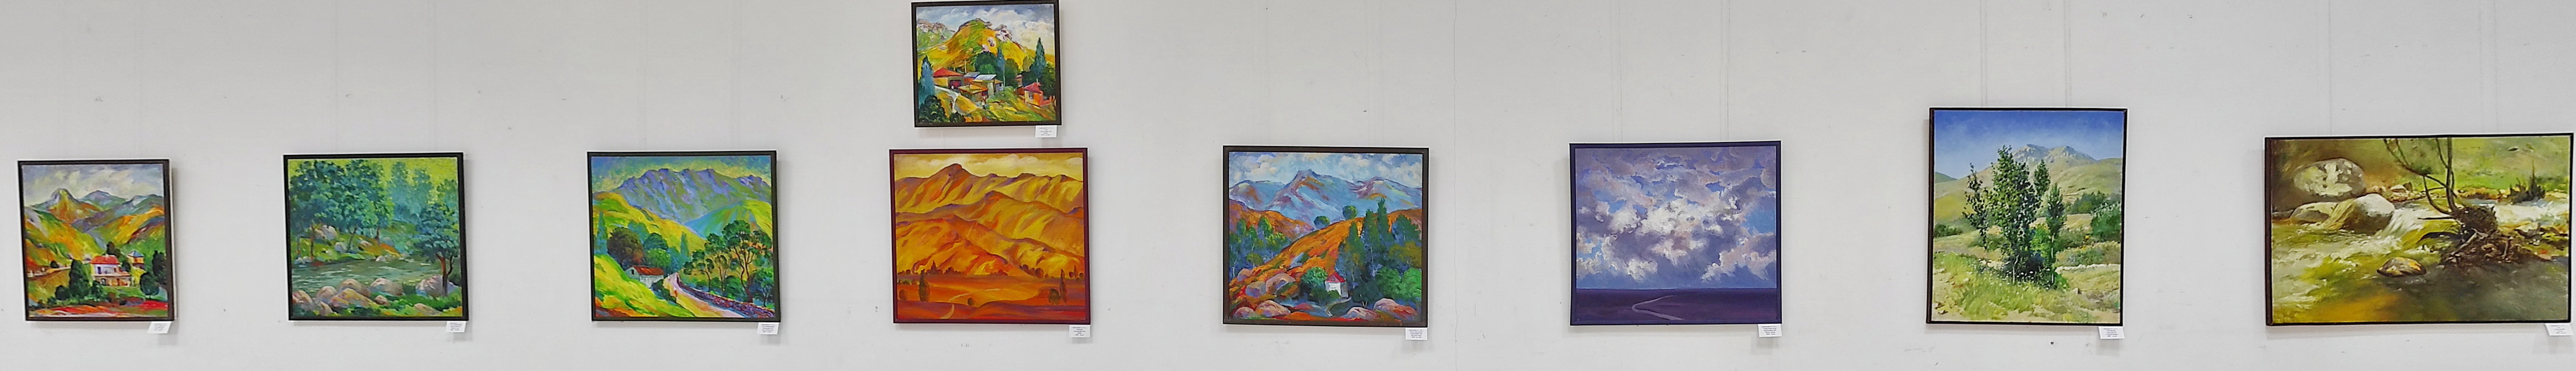 Экспозиция пейзажных картин Самаркандских художников. 2021